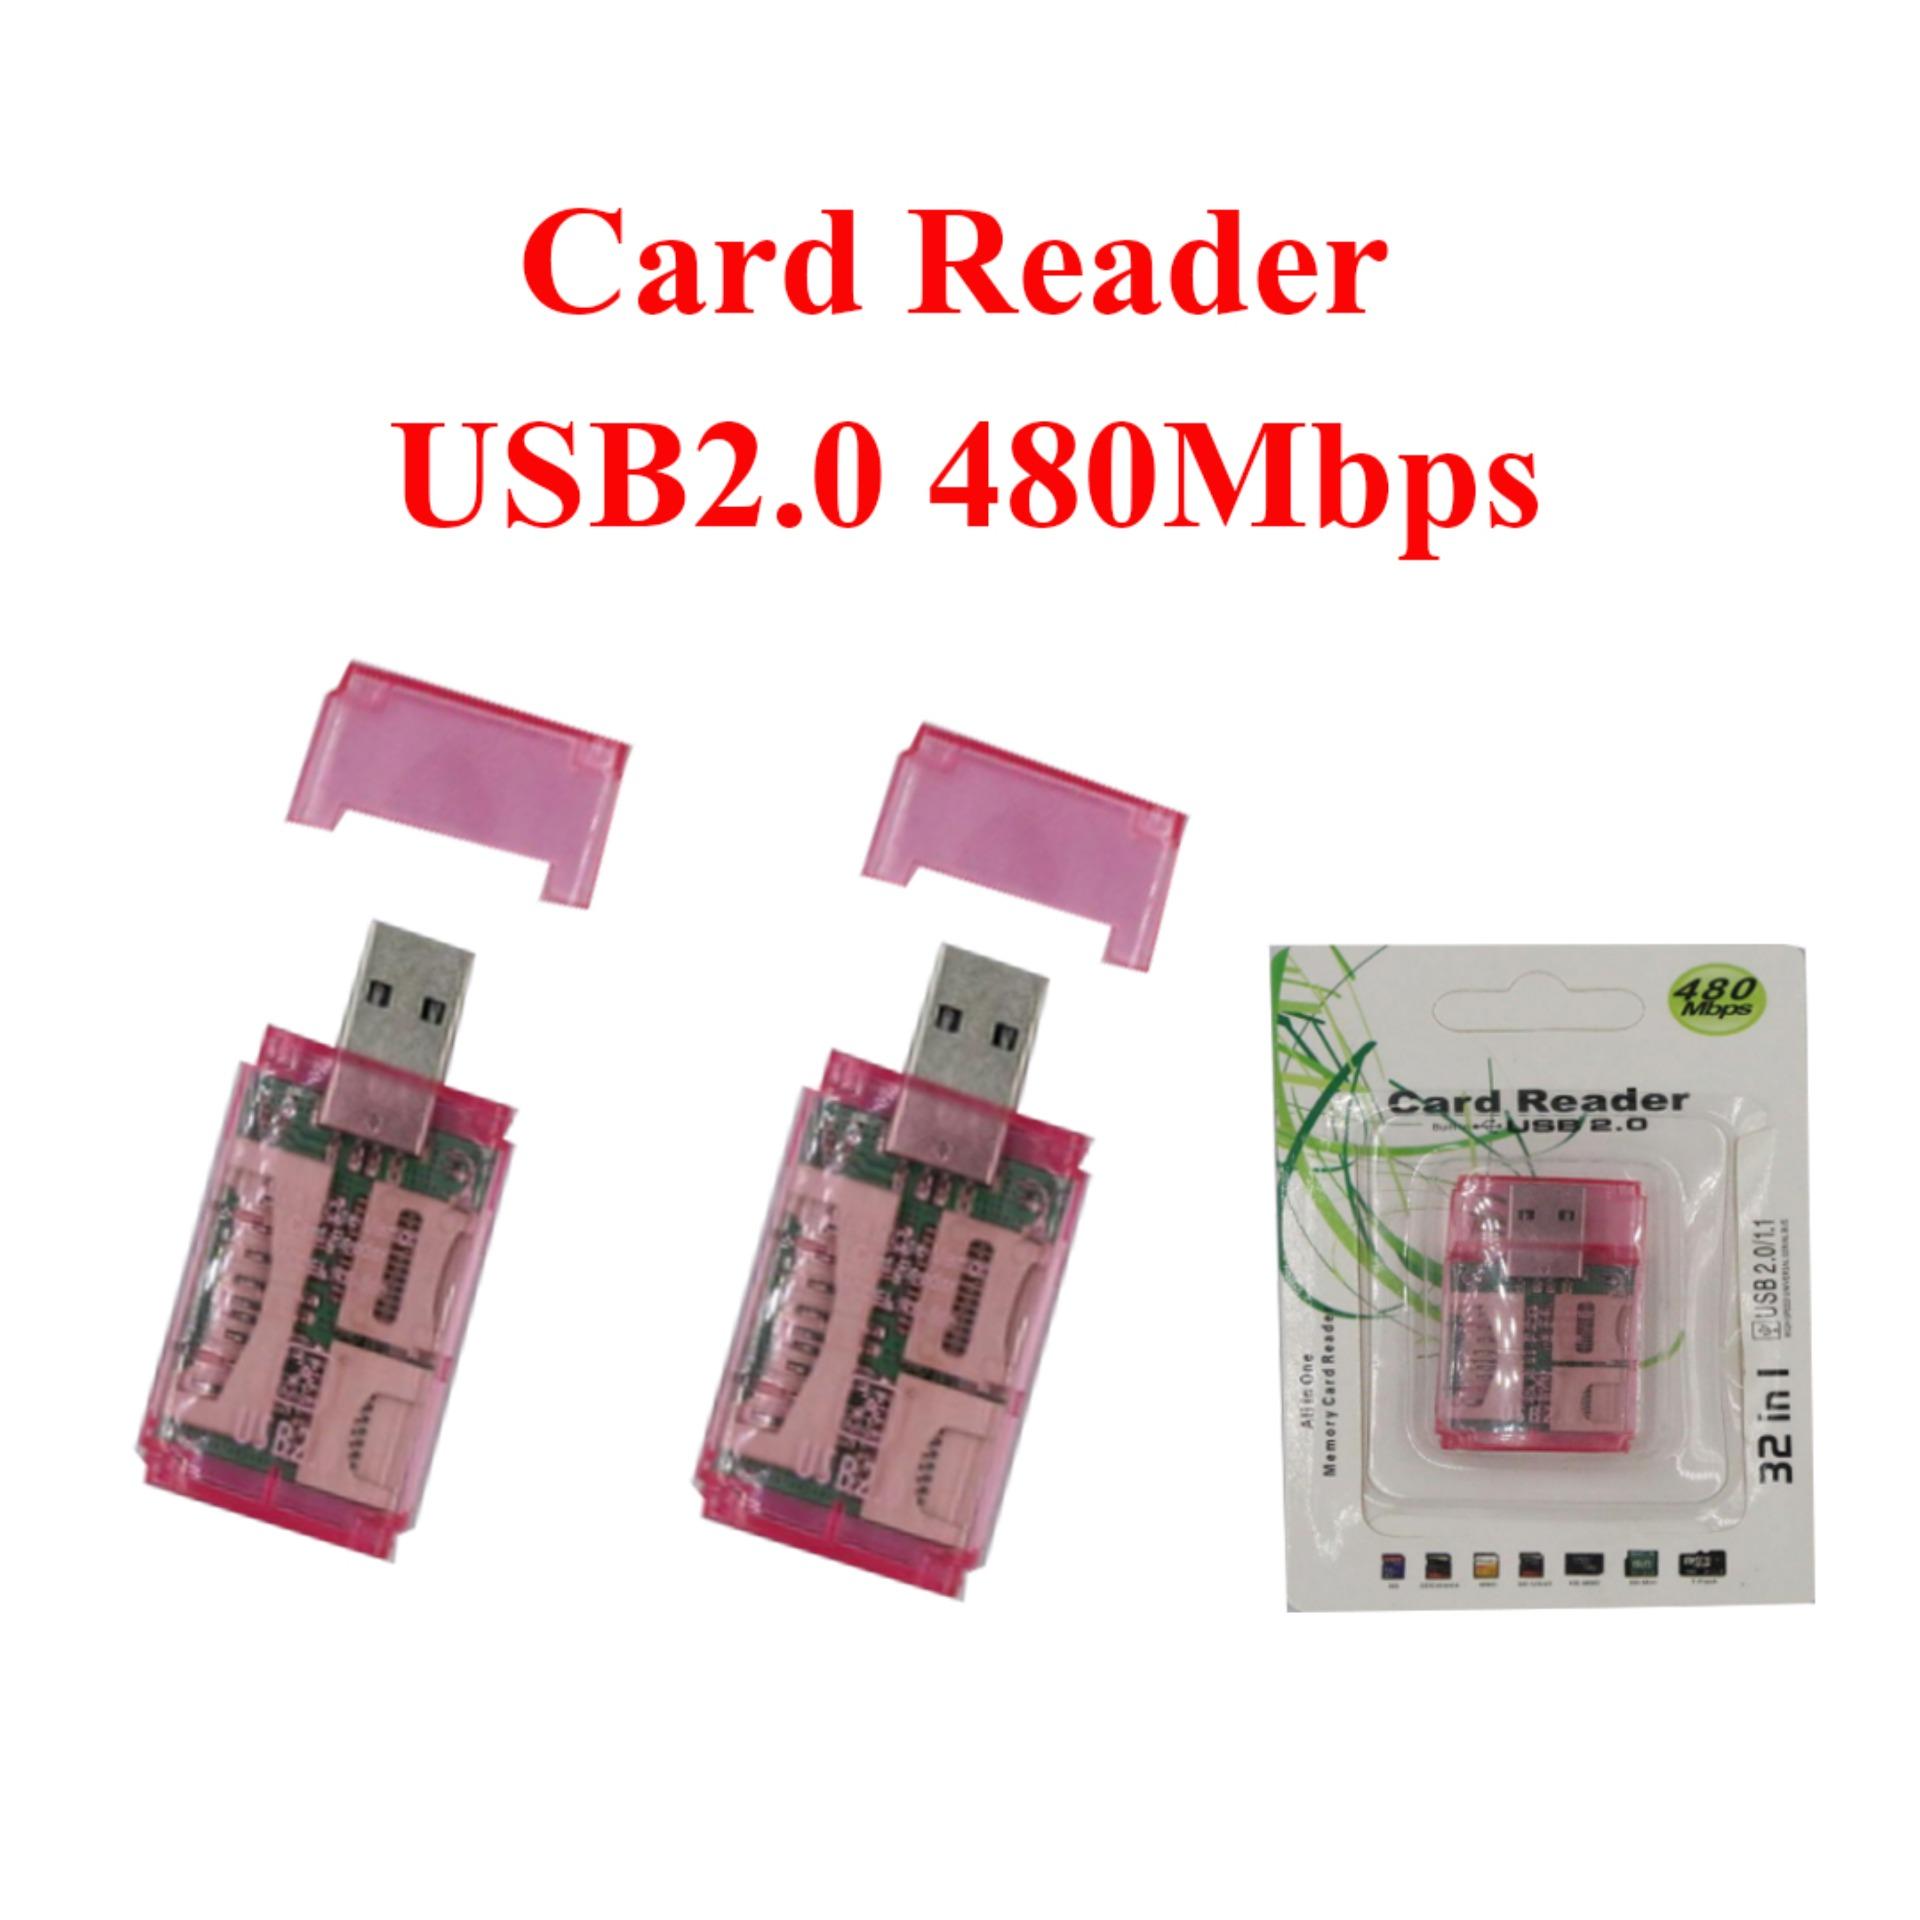 Card Reader USB2.0 480Mbps